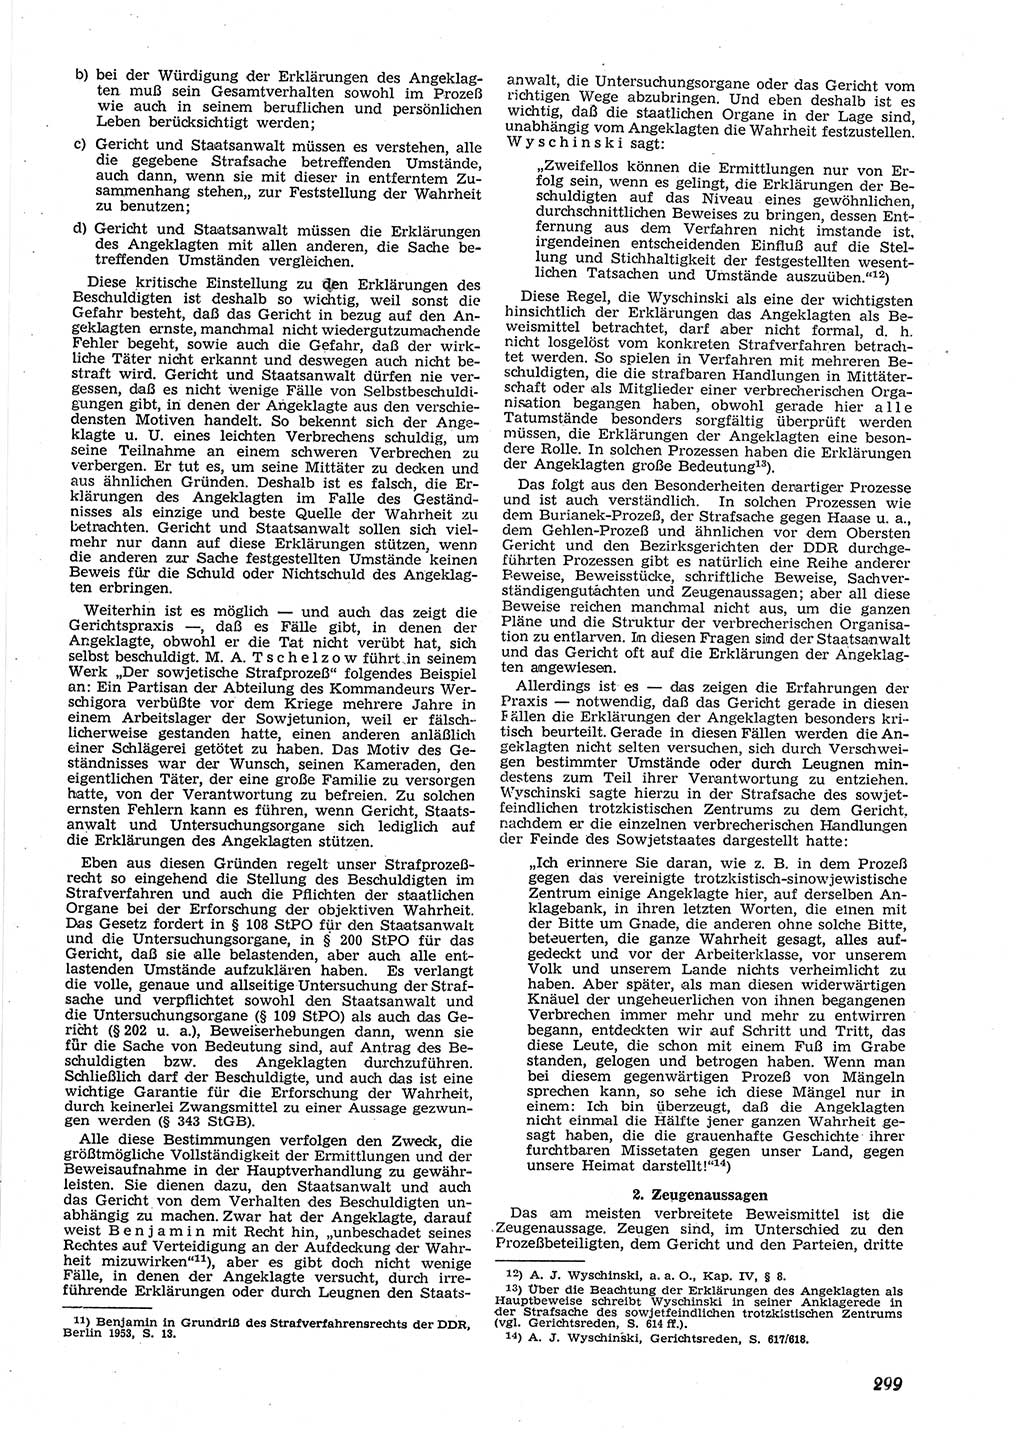 Neue Justiz (NJ), Zeitschrift für Recht und Rechtswissenschaft [Deutsche Demokratische Republik (DDR)], 9. Jahrgang 1955, Seite 299 (NJ DDR 1955, S. 299)